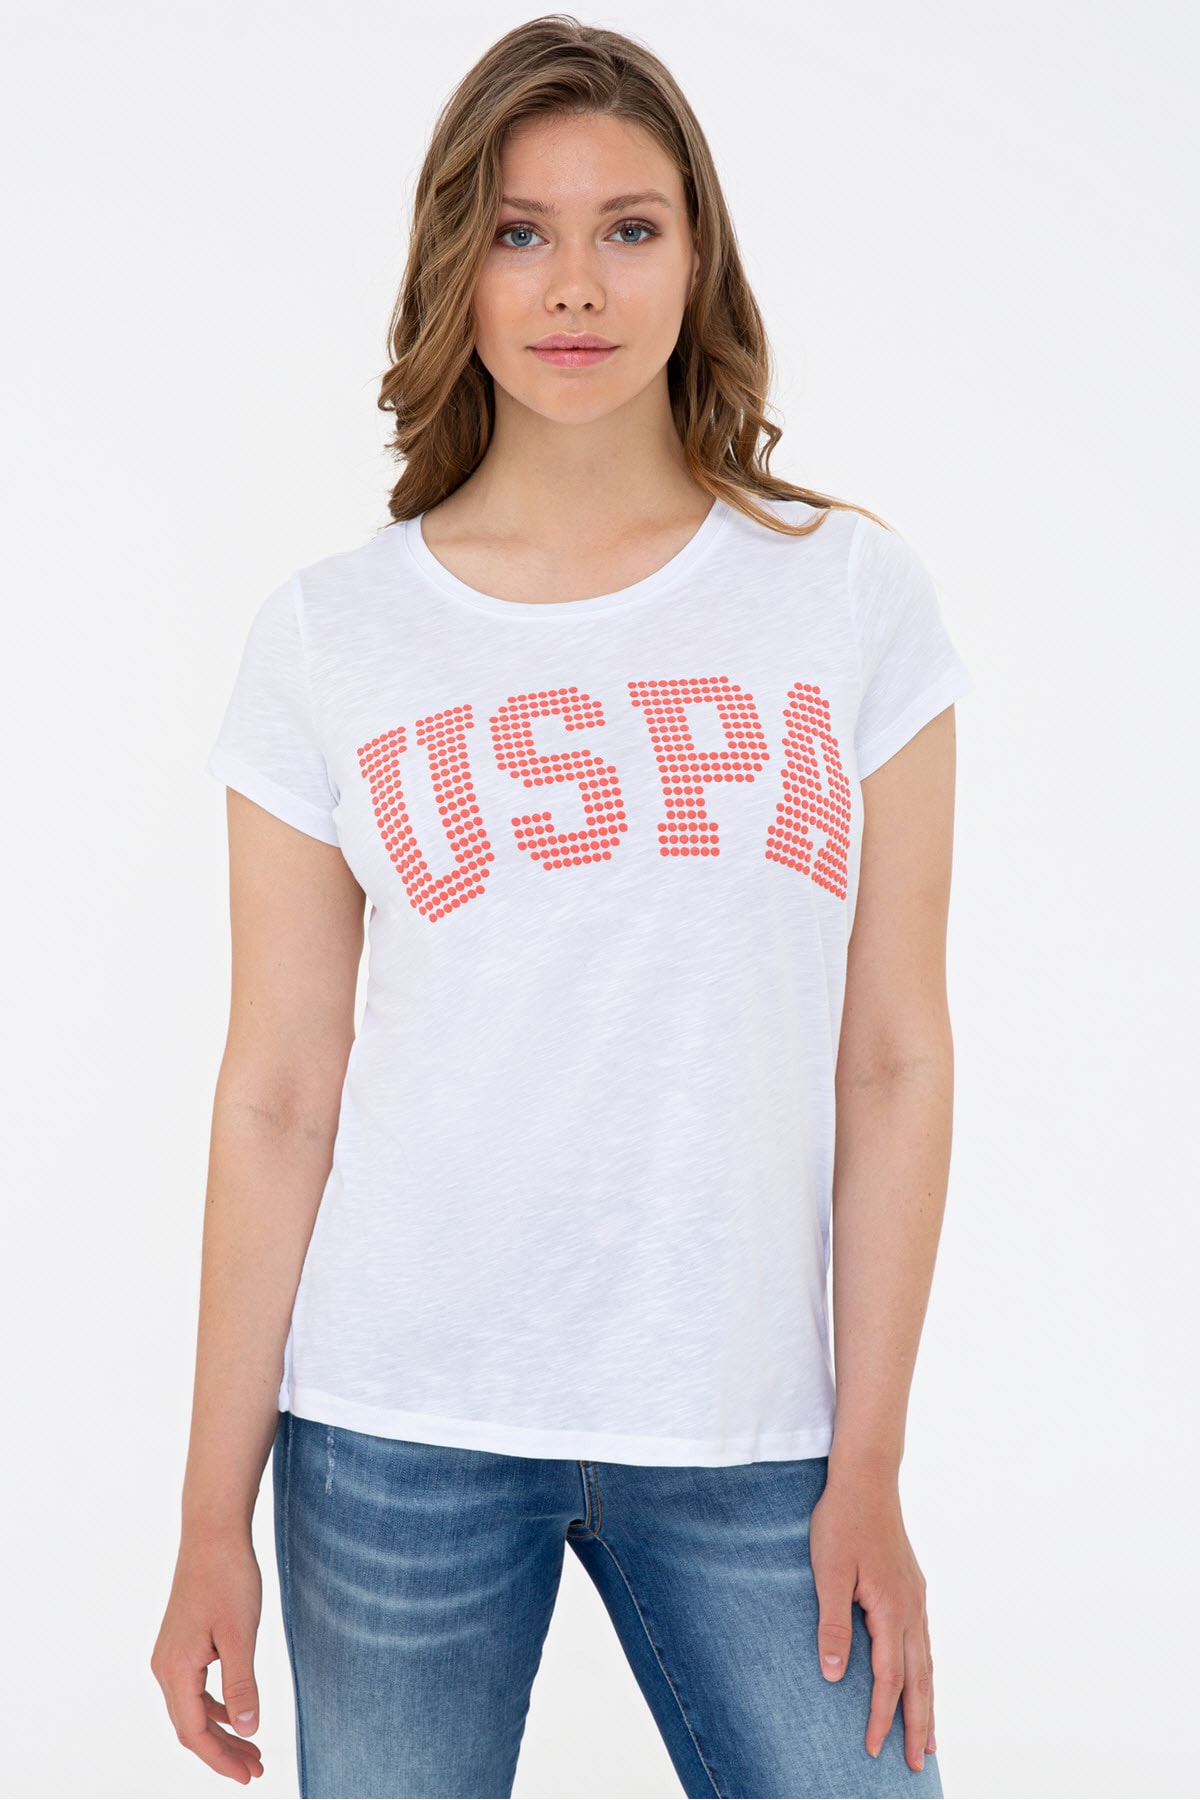 تیشرت زنانه سفید پولو با USPA نوشته Us polo